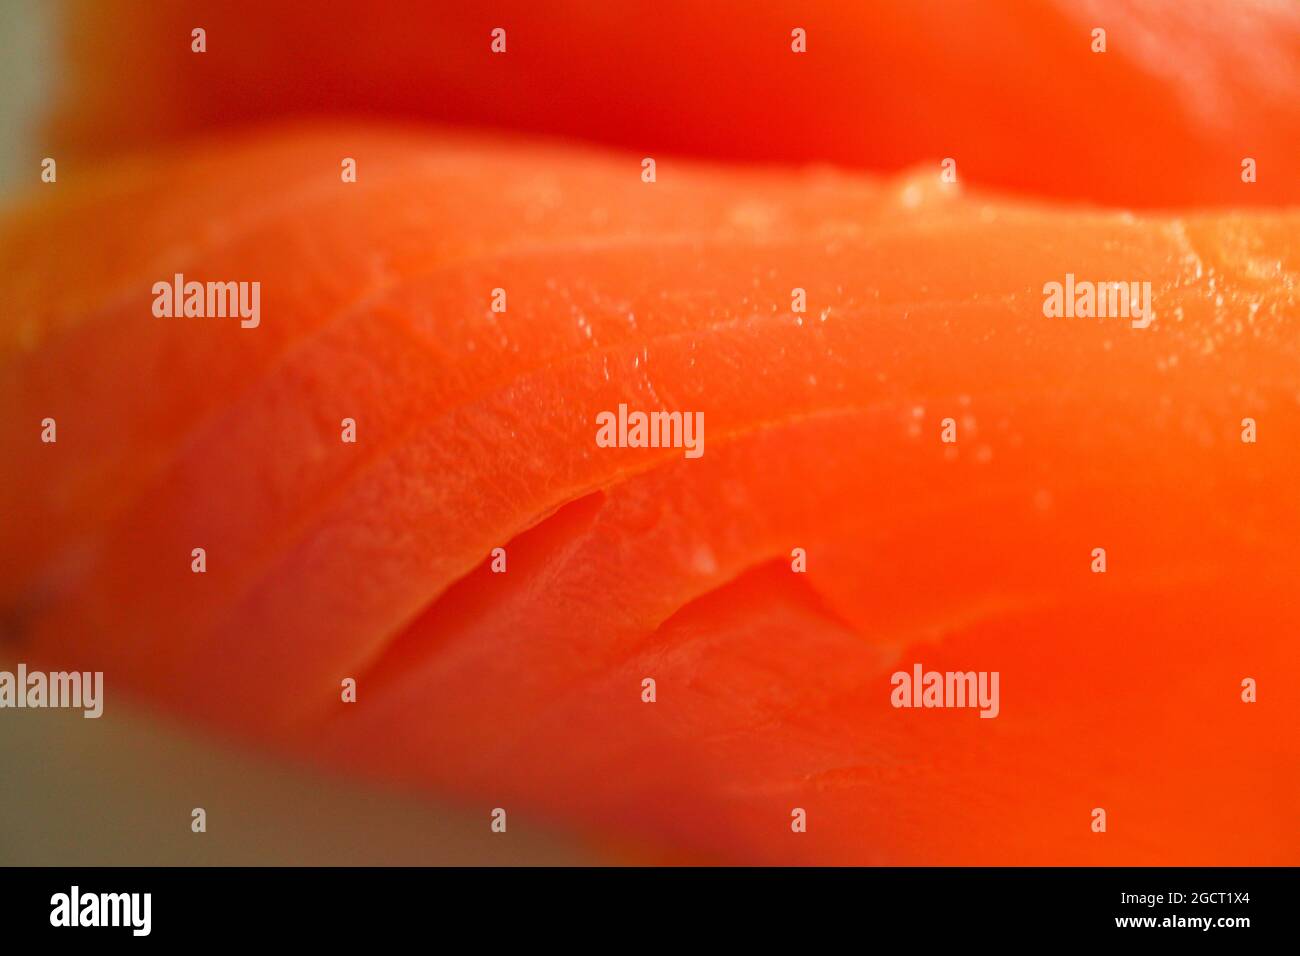 primo piano salmone affumicato - tessuto di pesce affumicato Foto Stock